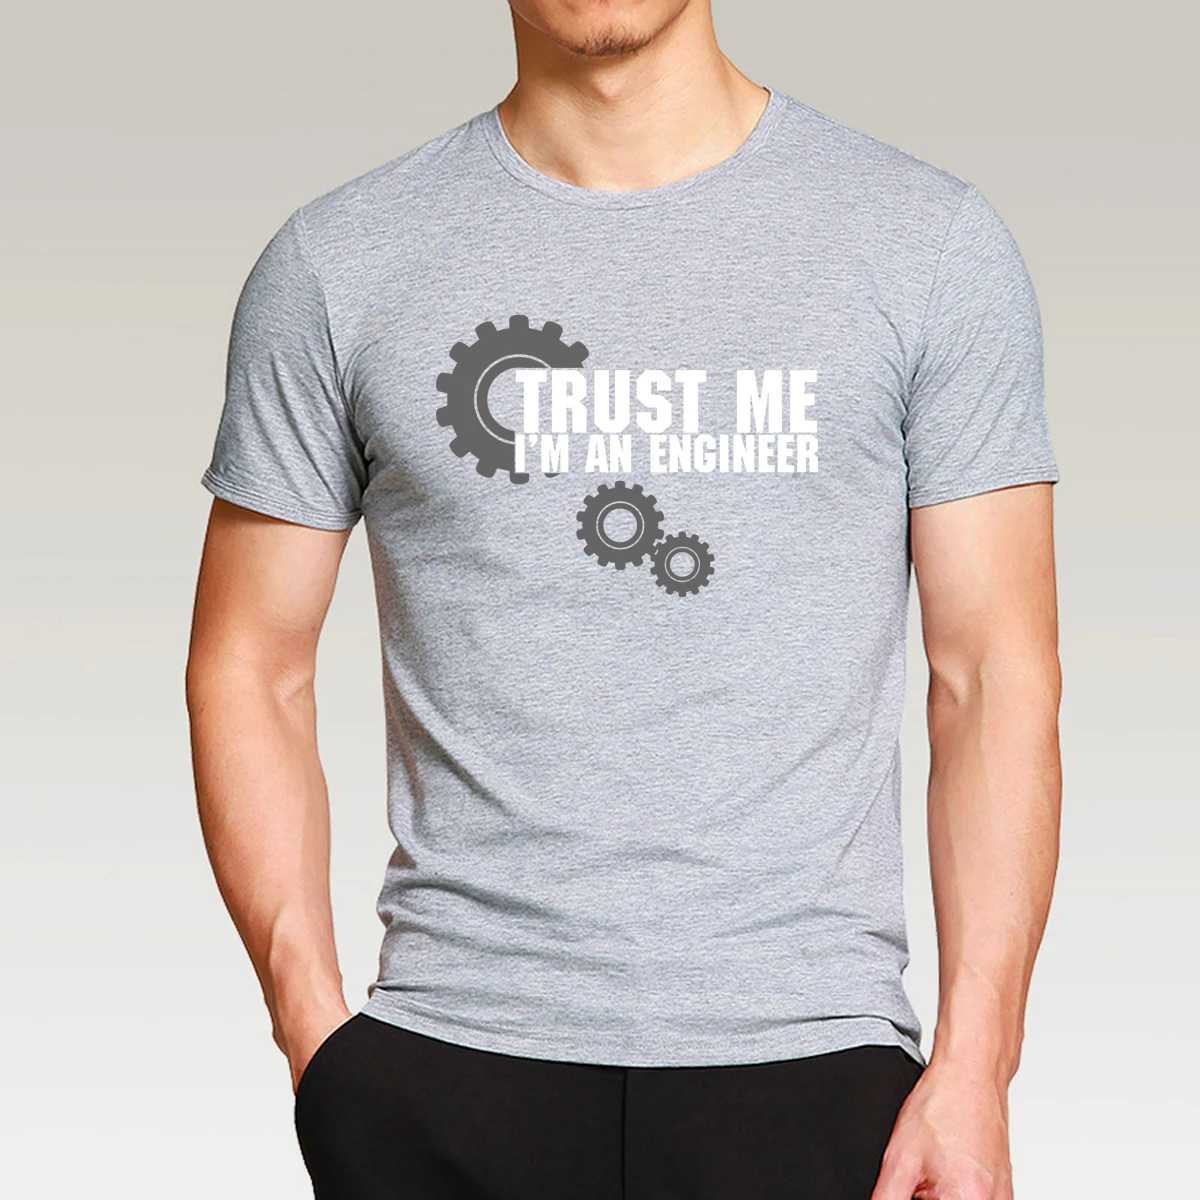 Мужская футболка с коротким рукавом, топы, футболки, harajuku Trust ME I AM AN ENGINEER, спортивная одежда, Хлопковая мужская футболка, брендовая модная футболка